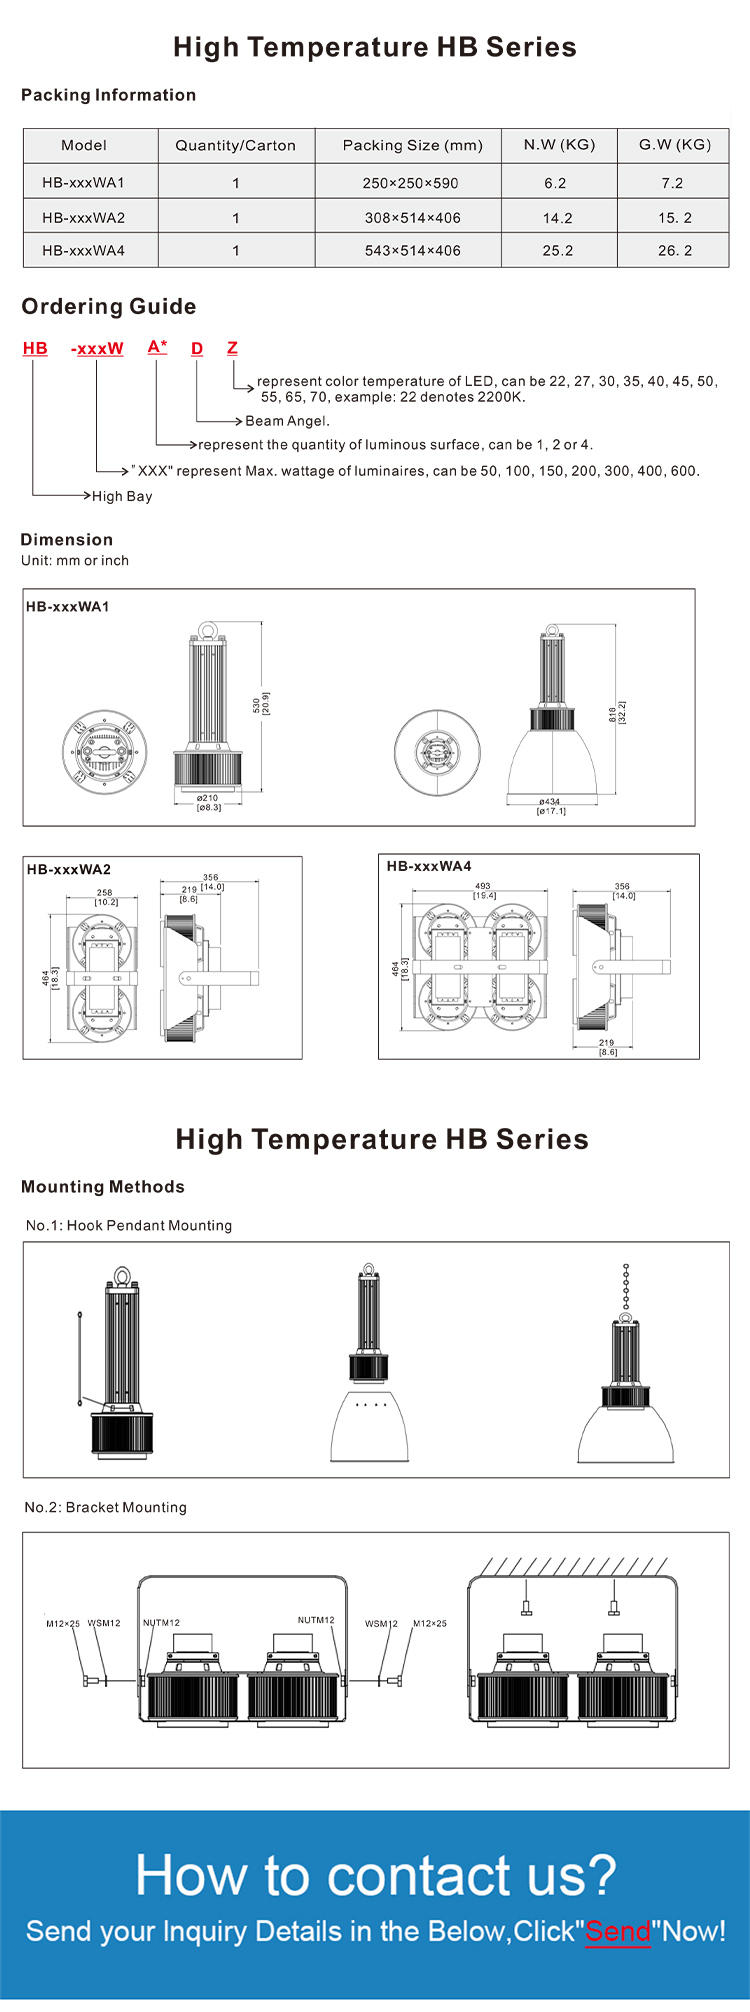 Pan American High Temperature HB Series